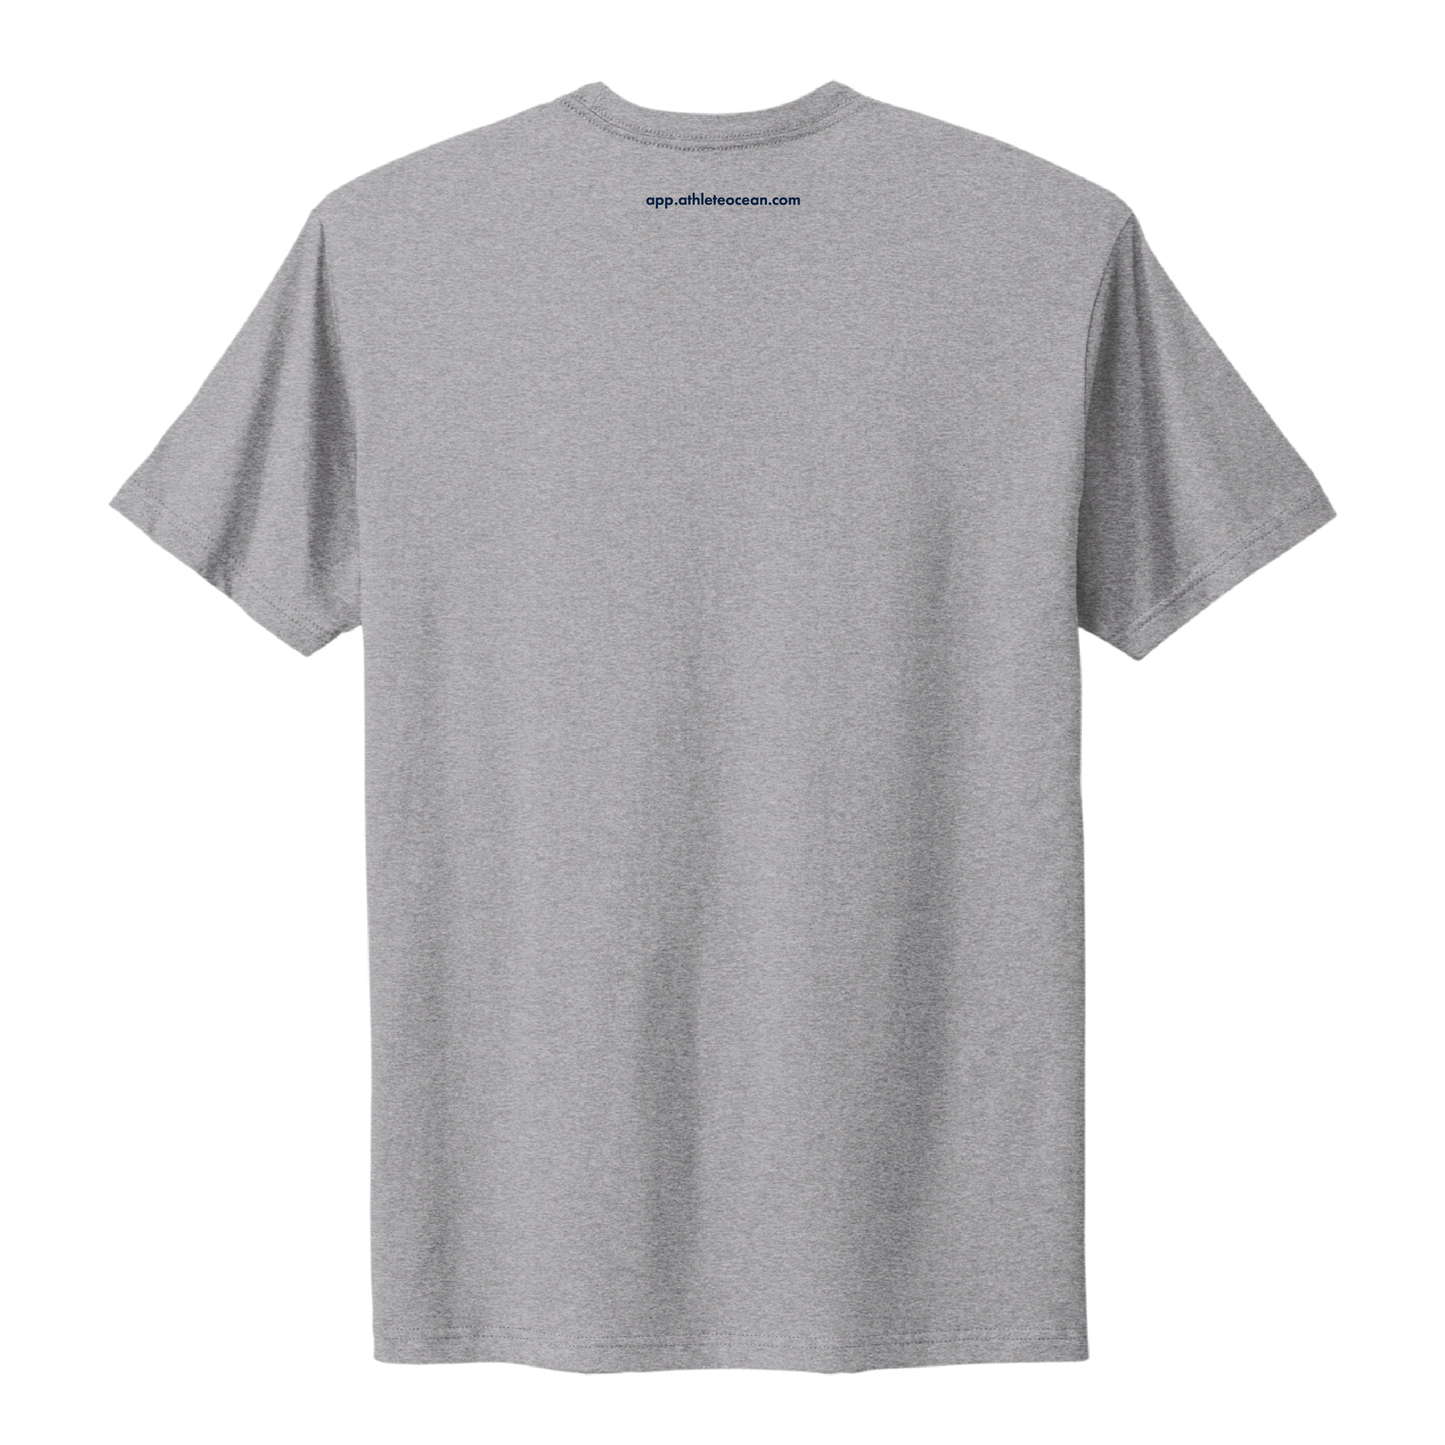 Premium Unisex Fine Heather Grey Jersey T-Shirt